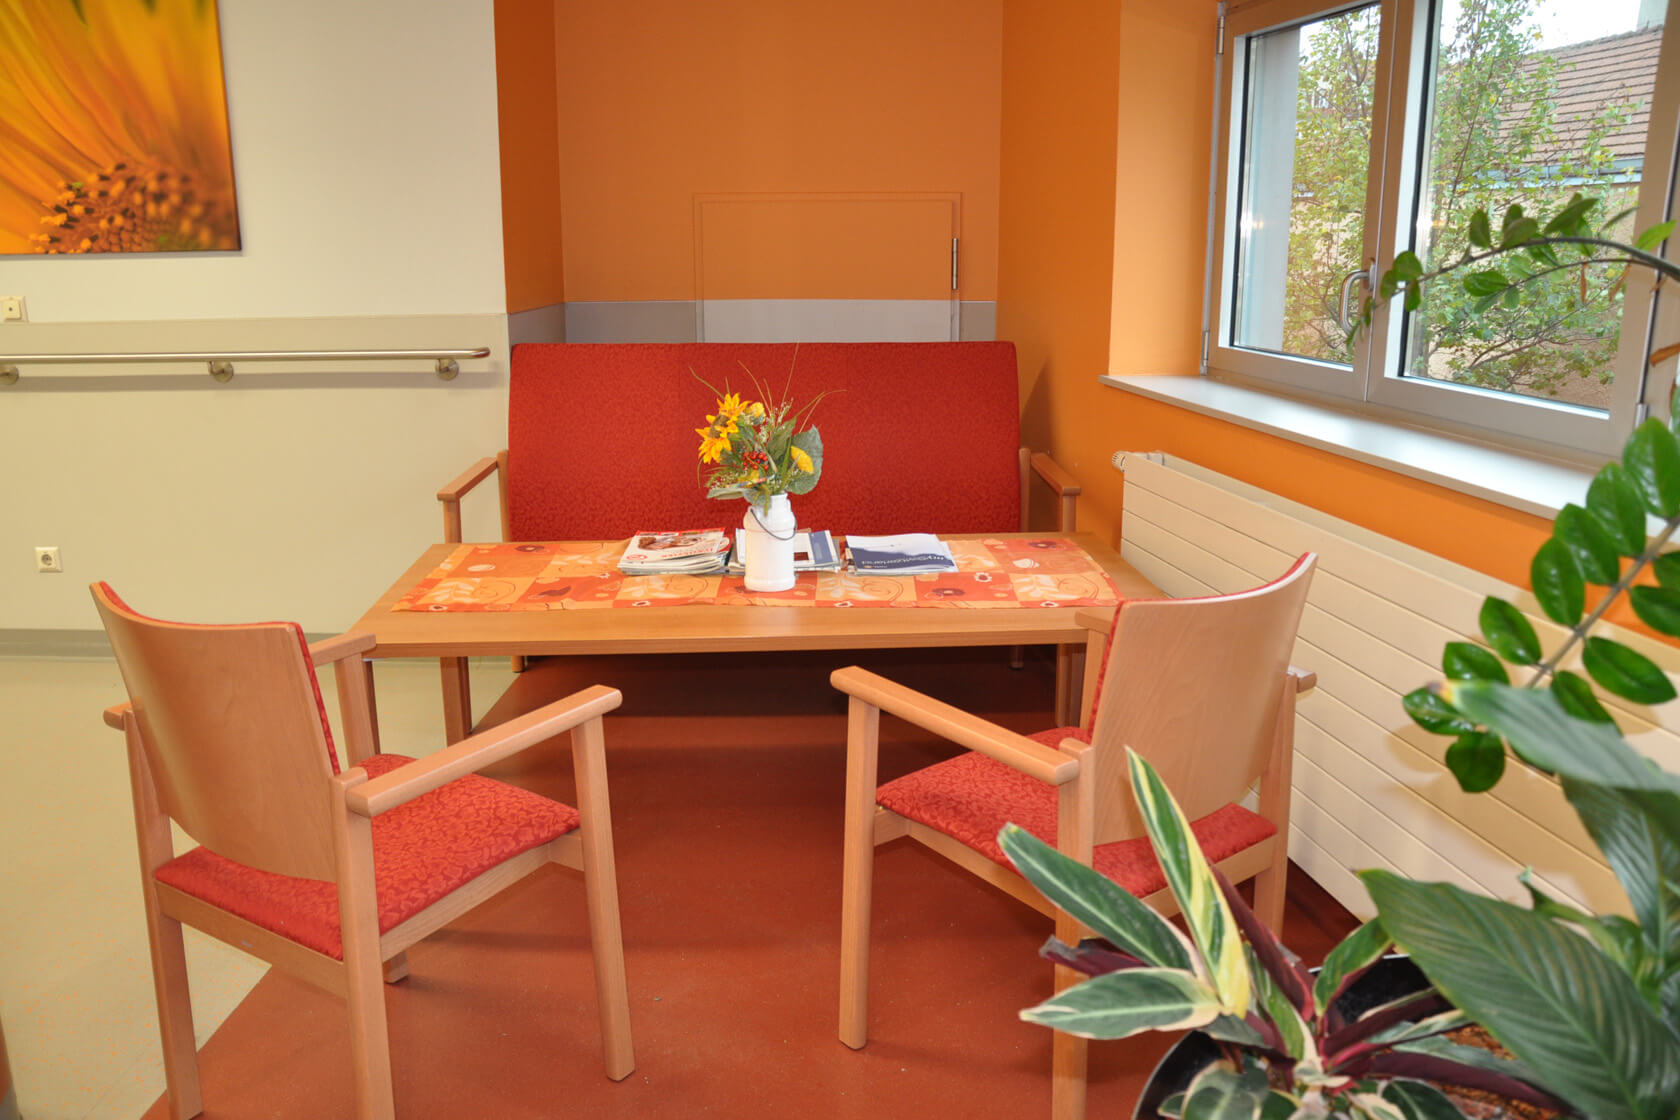 Vor einer orange gestrichenen Wand steht eine rot bezogenen Sitzbank, ein Holztisch und zwei rotbezogene Stühle.